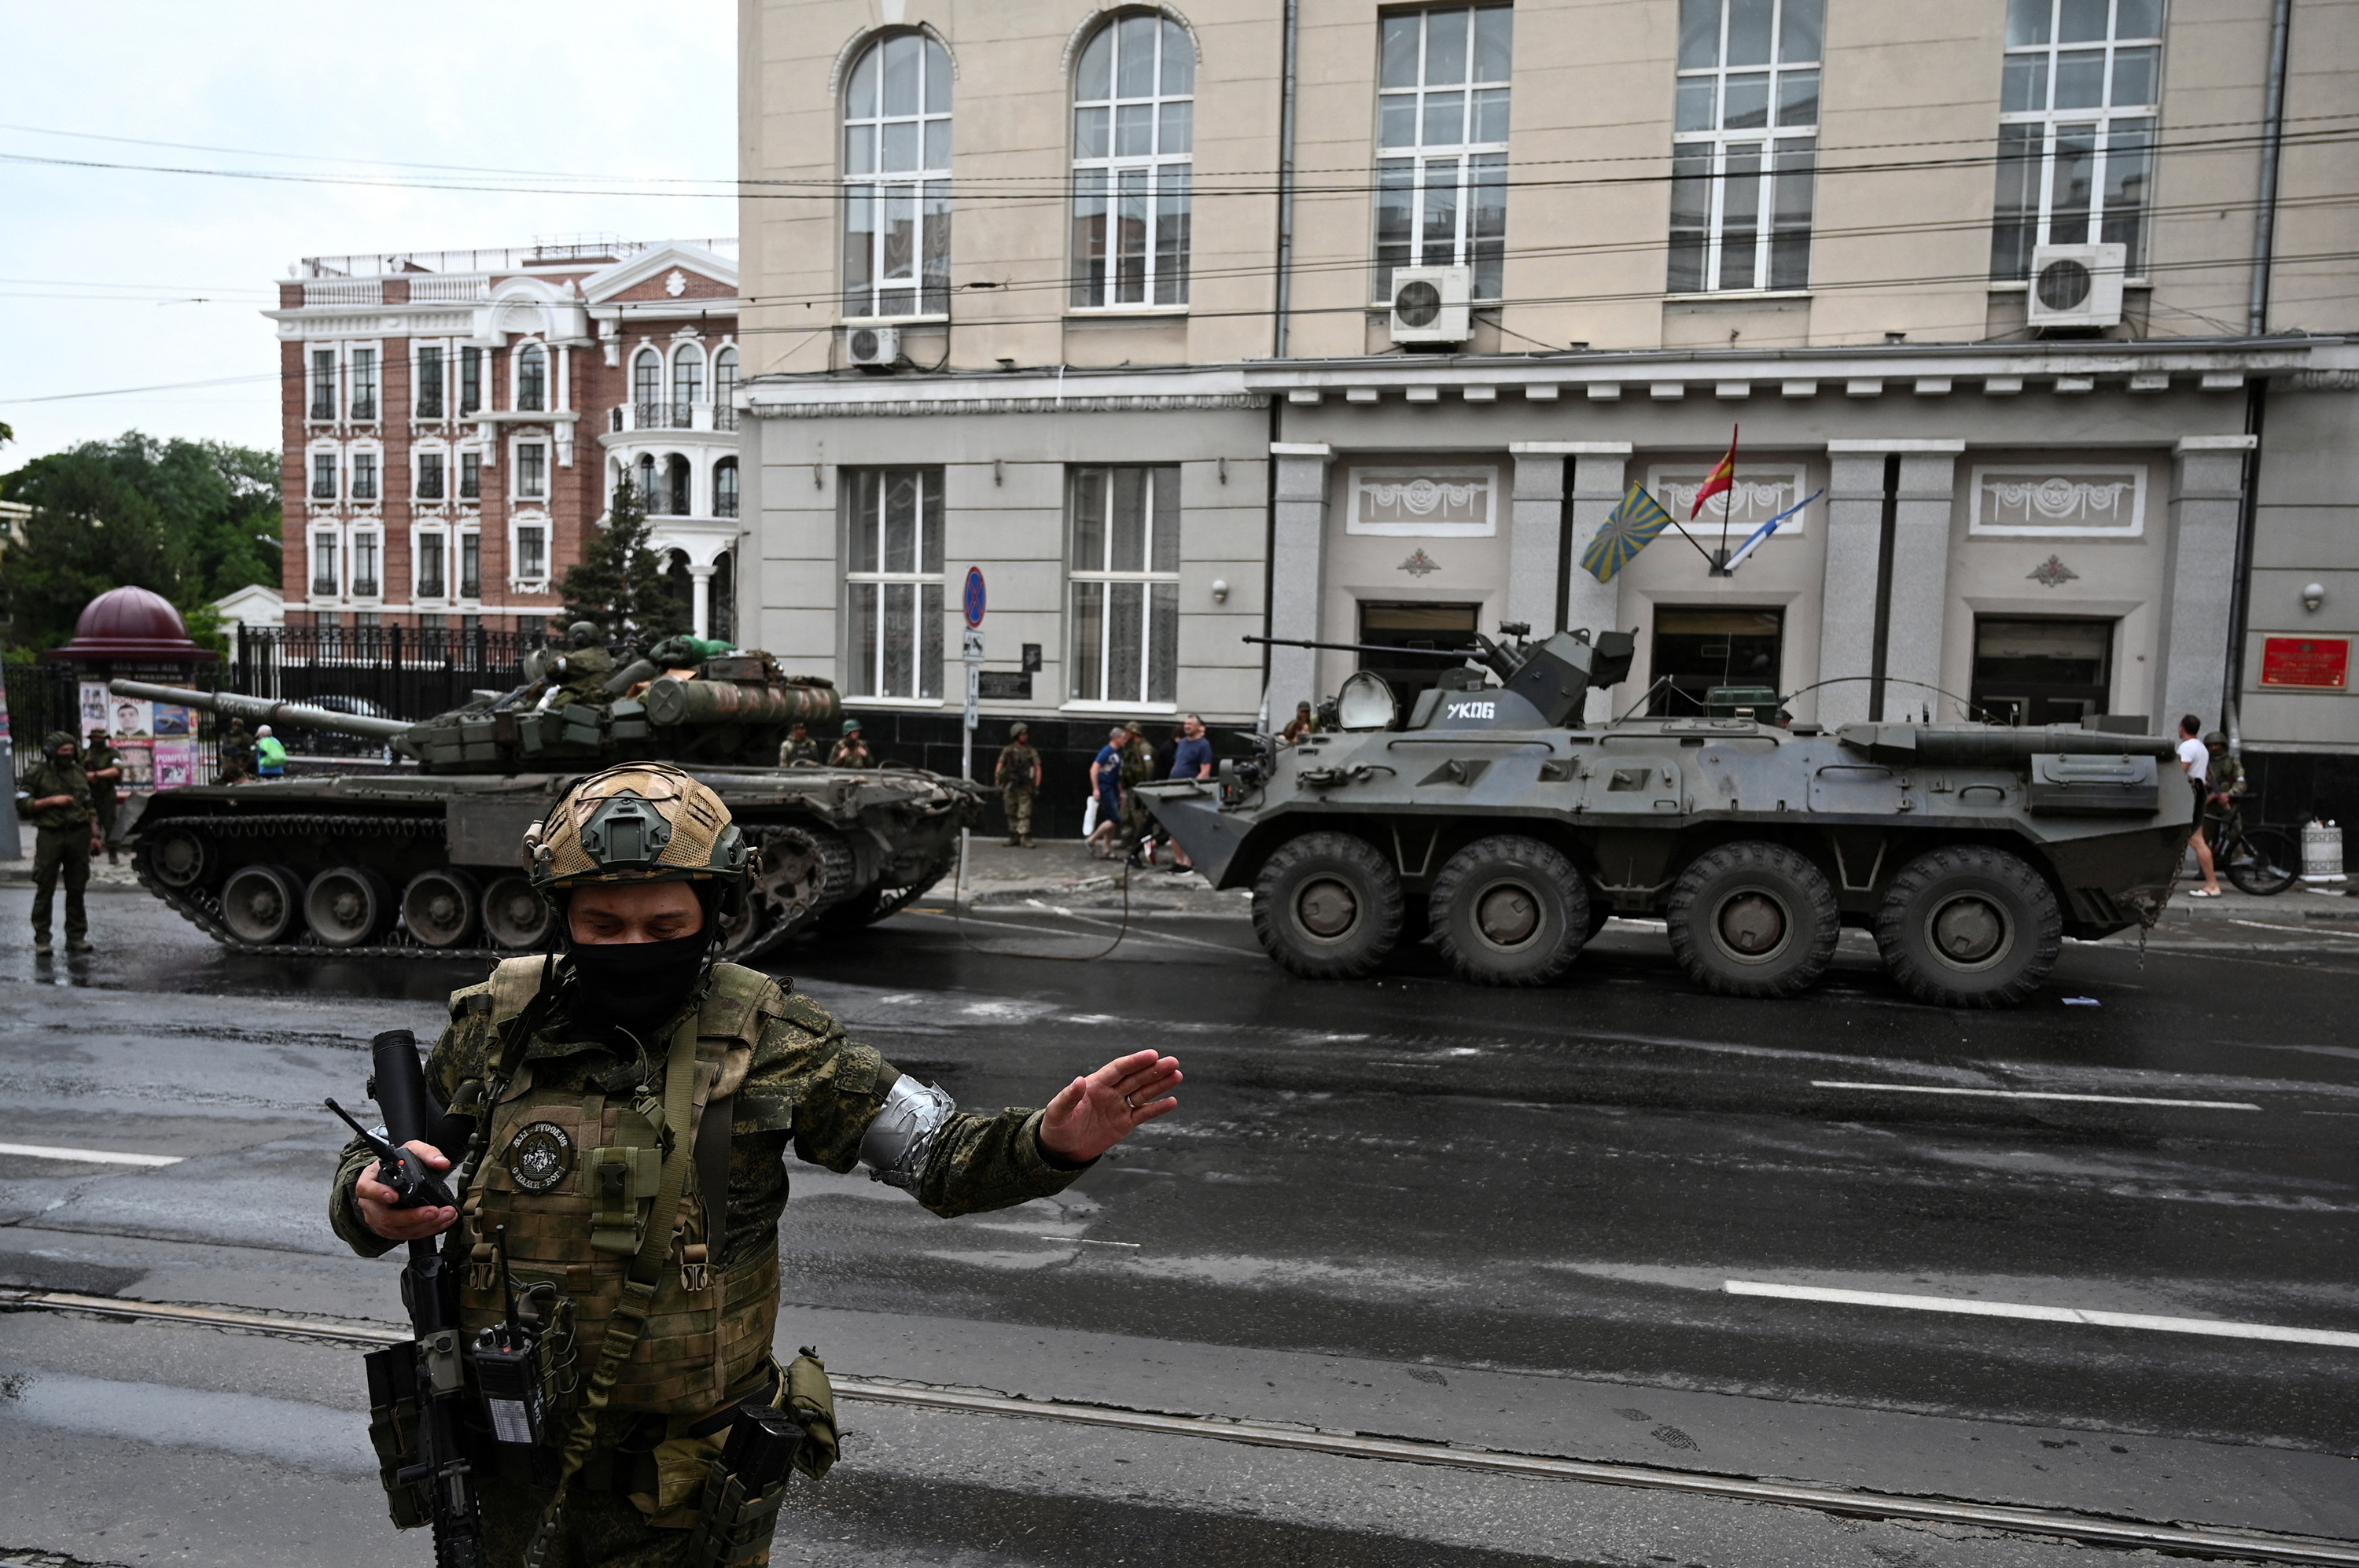 قلق وترقب عالمي لمجرى الأحداث في روسيا بعد تمرد فاغنر